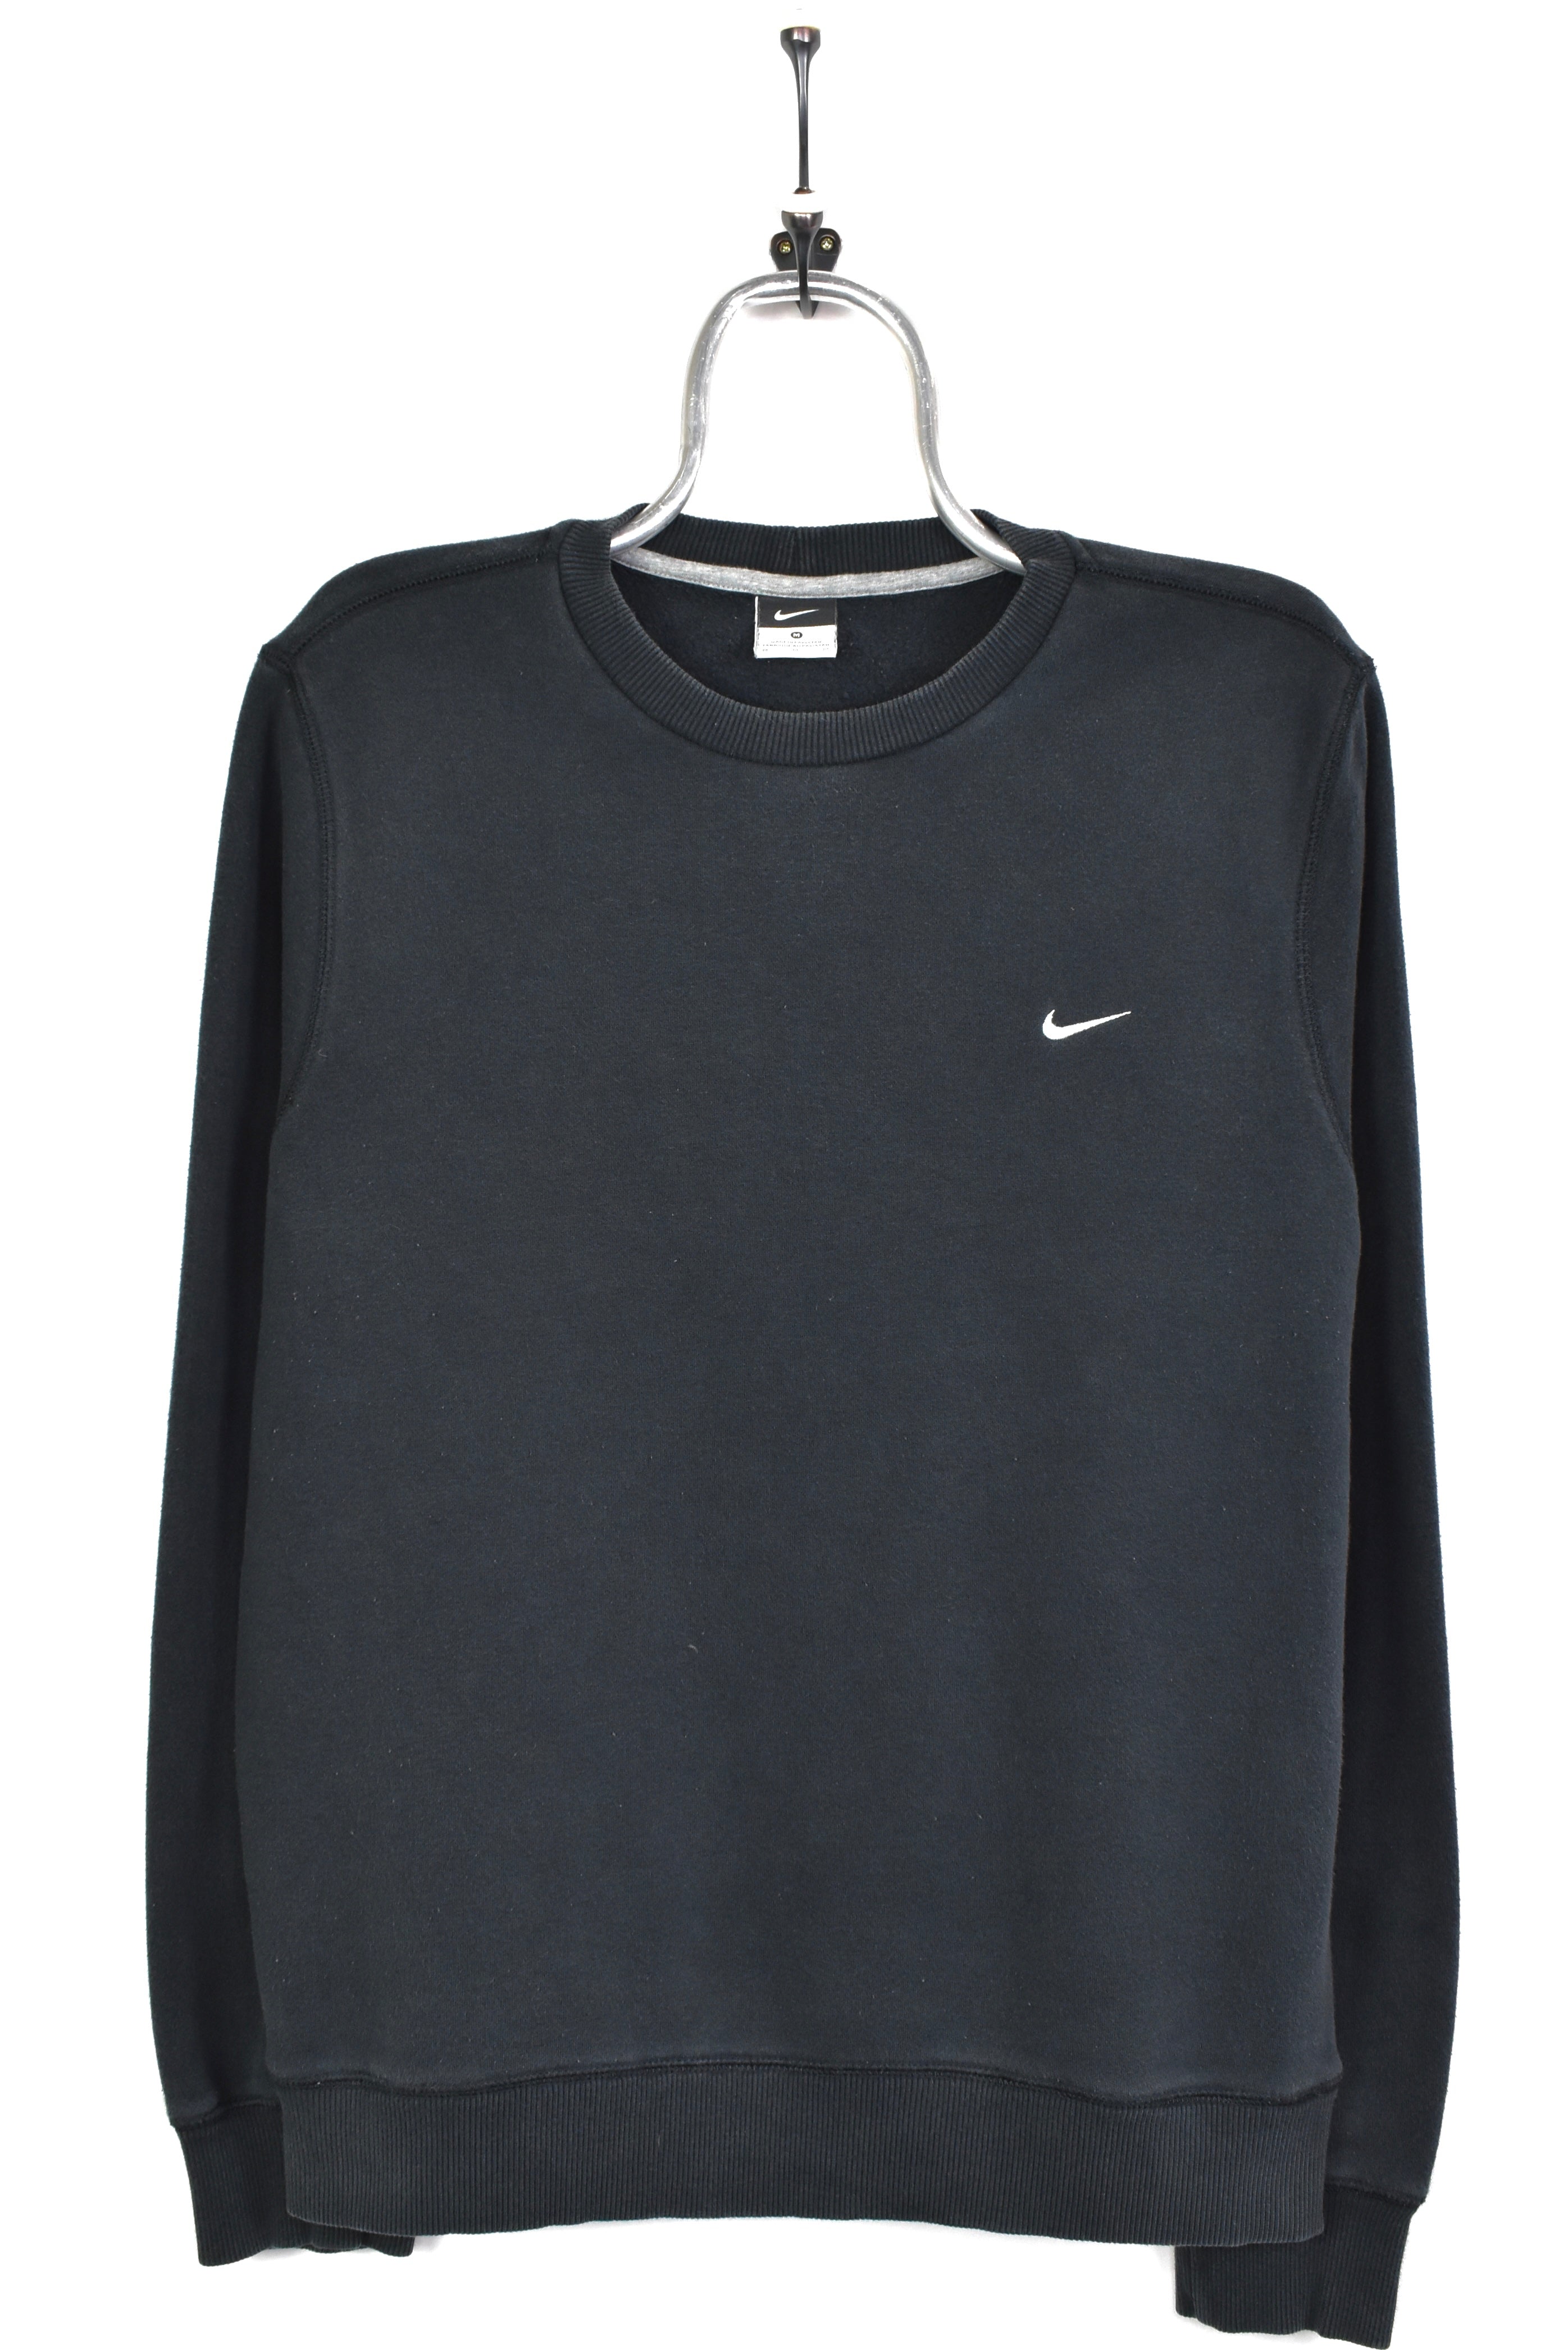 Vintage Nike embroidered black sweatshirt | Medium NIKE